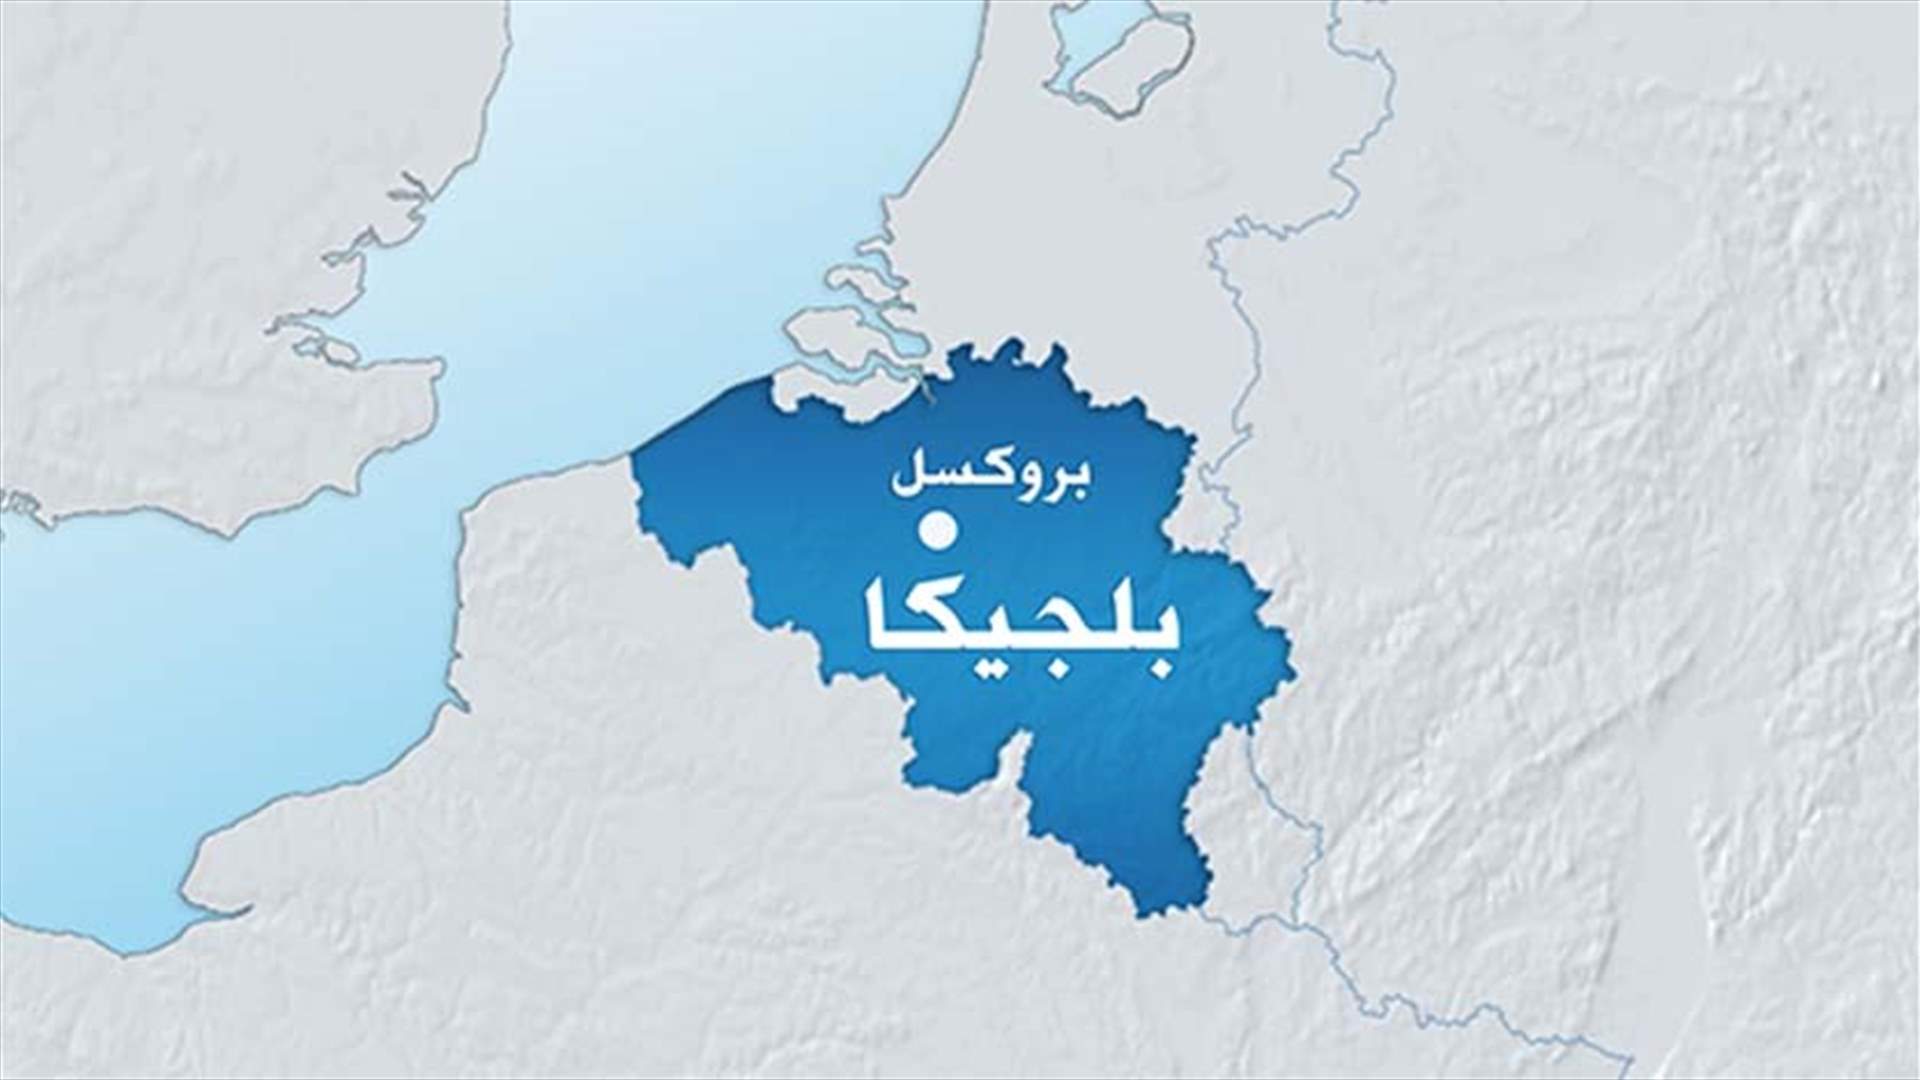 اعتقال 4 اشخاص في بلجيكا كانوا يعتزمون السفر إلى سوريا أو ليبيا